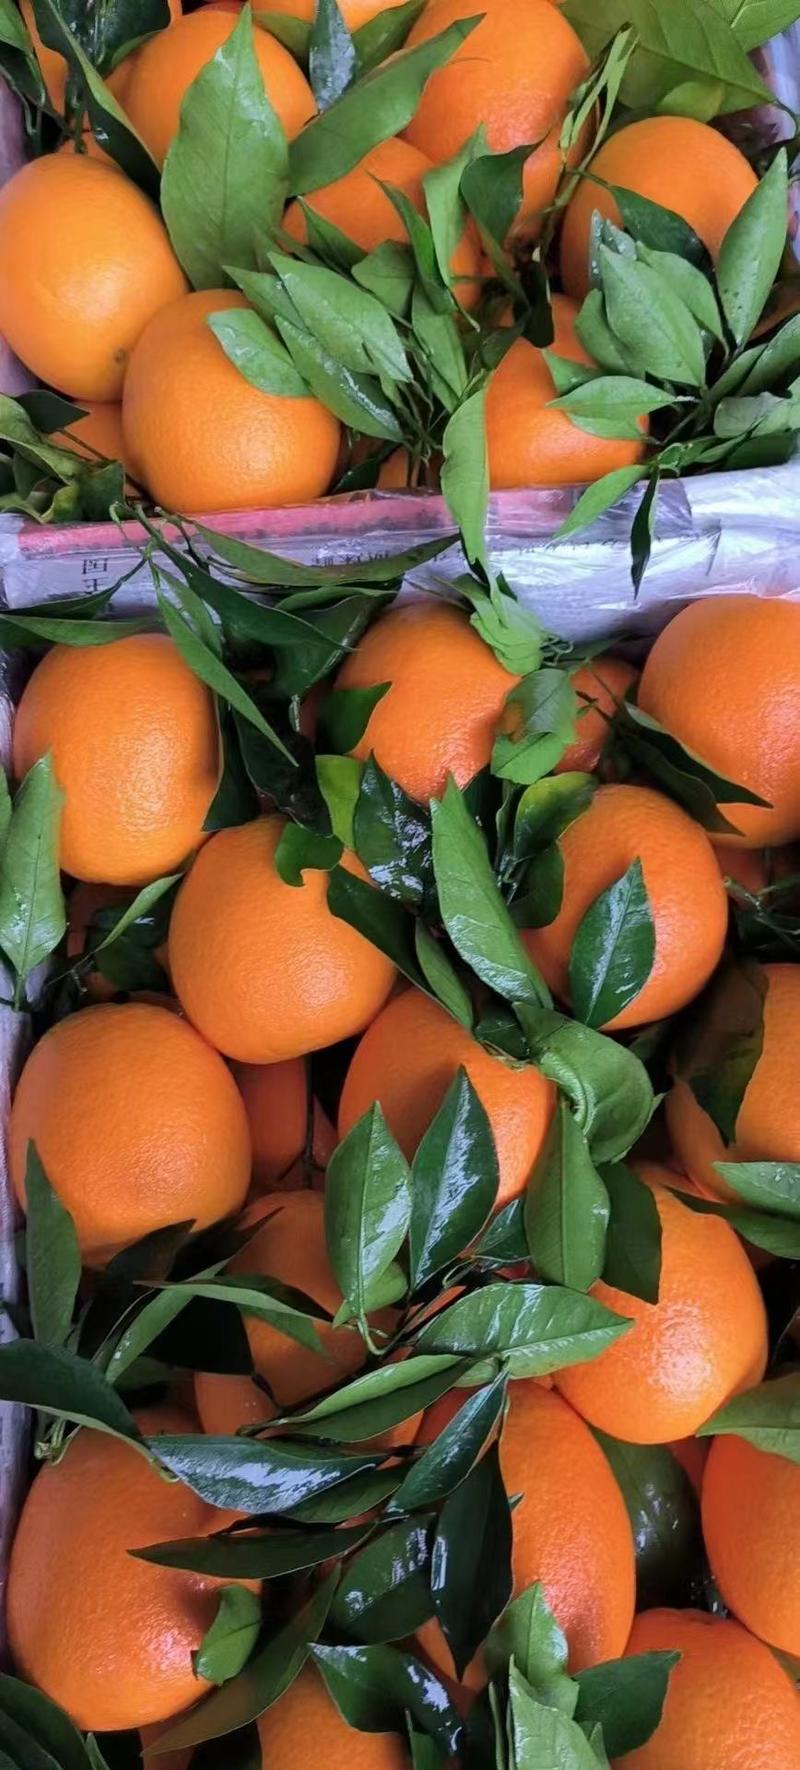 湖北宜昌纽荷尔脐橙个大甜度高产地一手货源专业代收代办20年